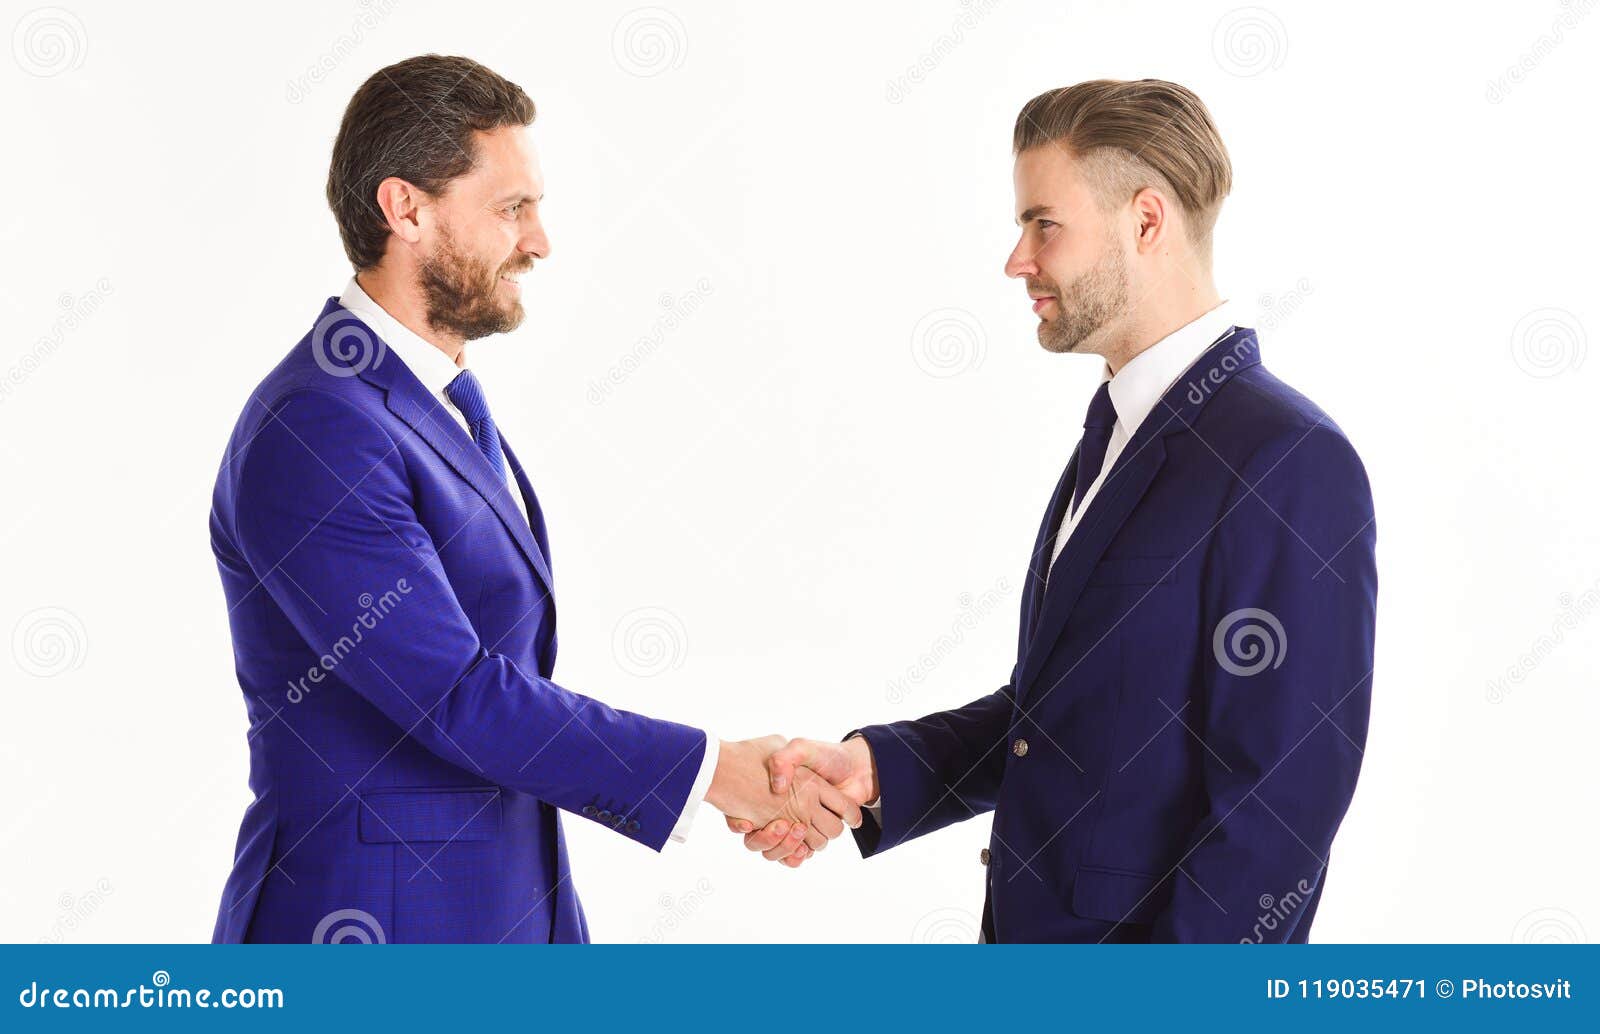 men in suits or businessmen hold hands in handshake.